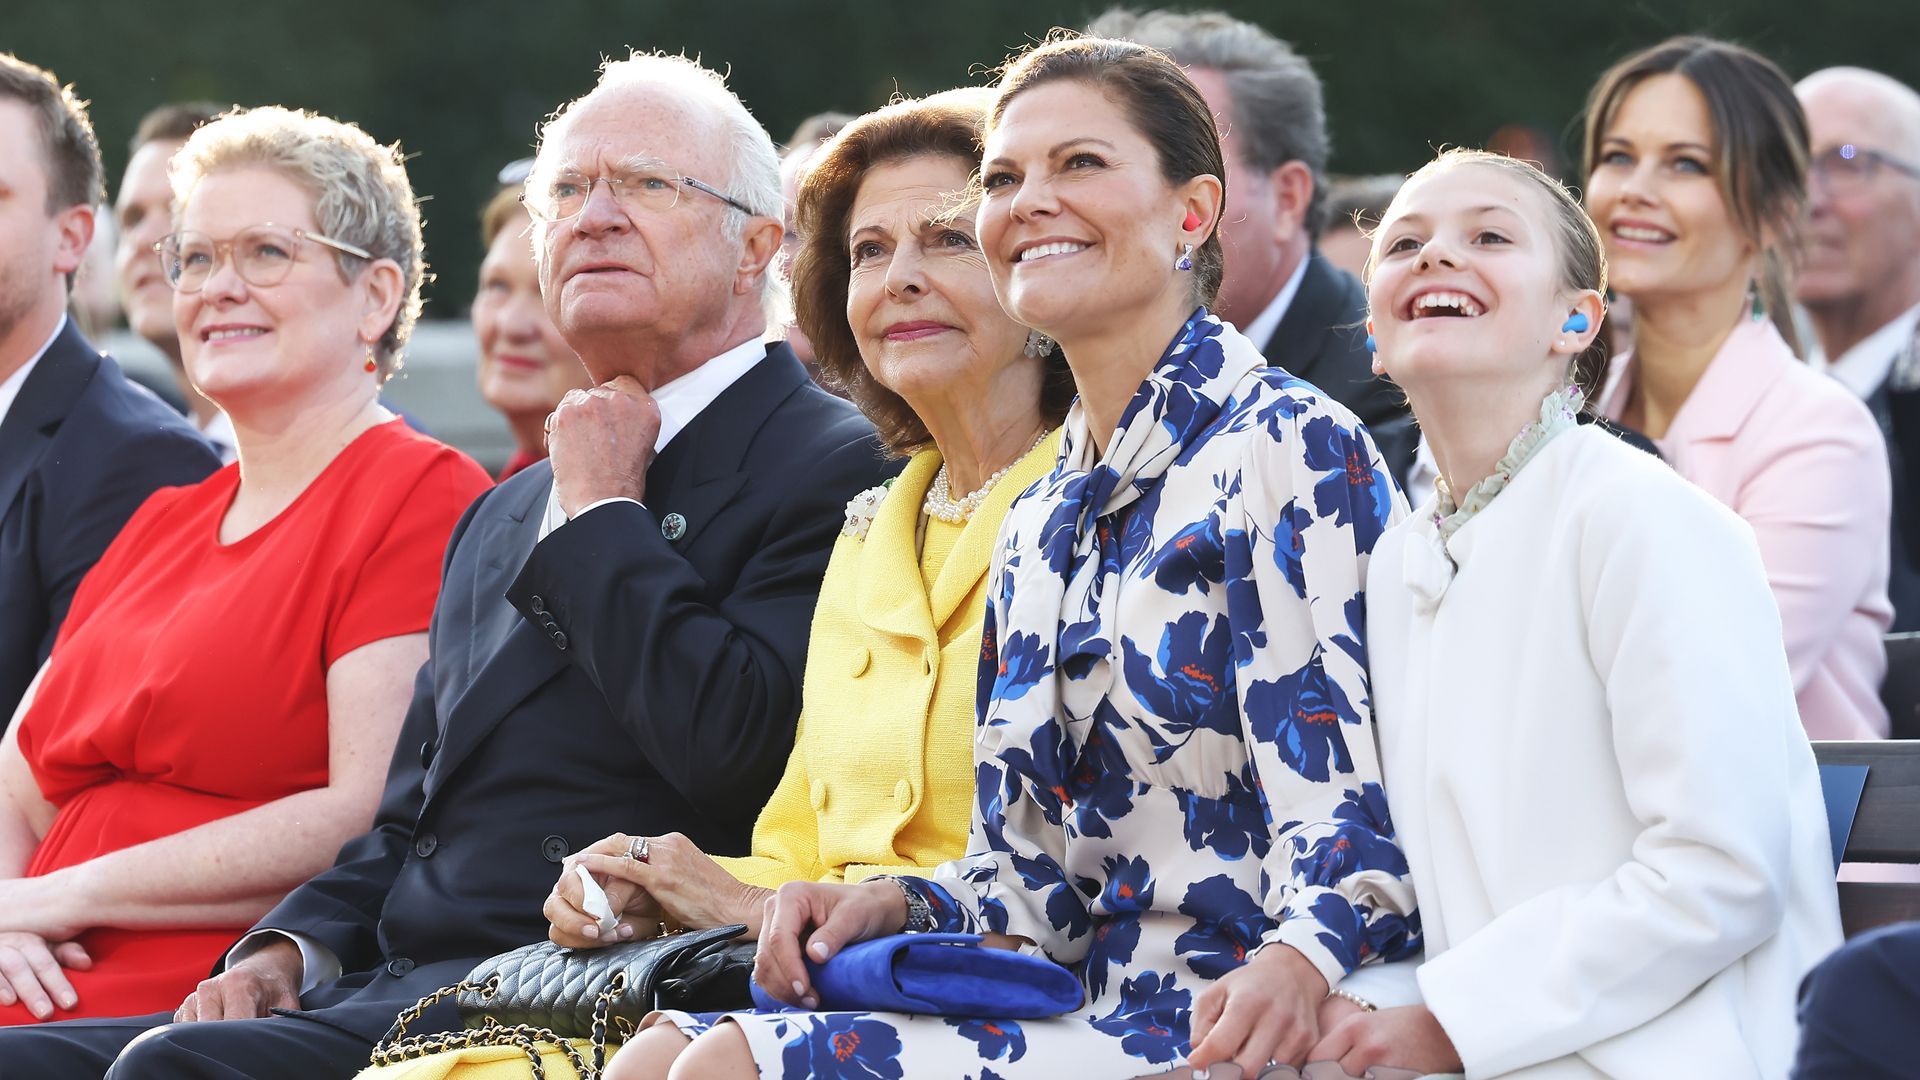 The Swedish royal family celebrates before Christmas.